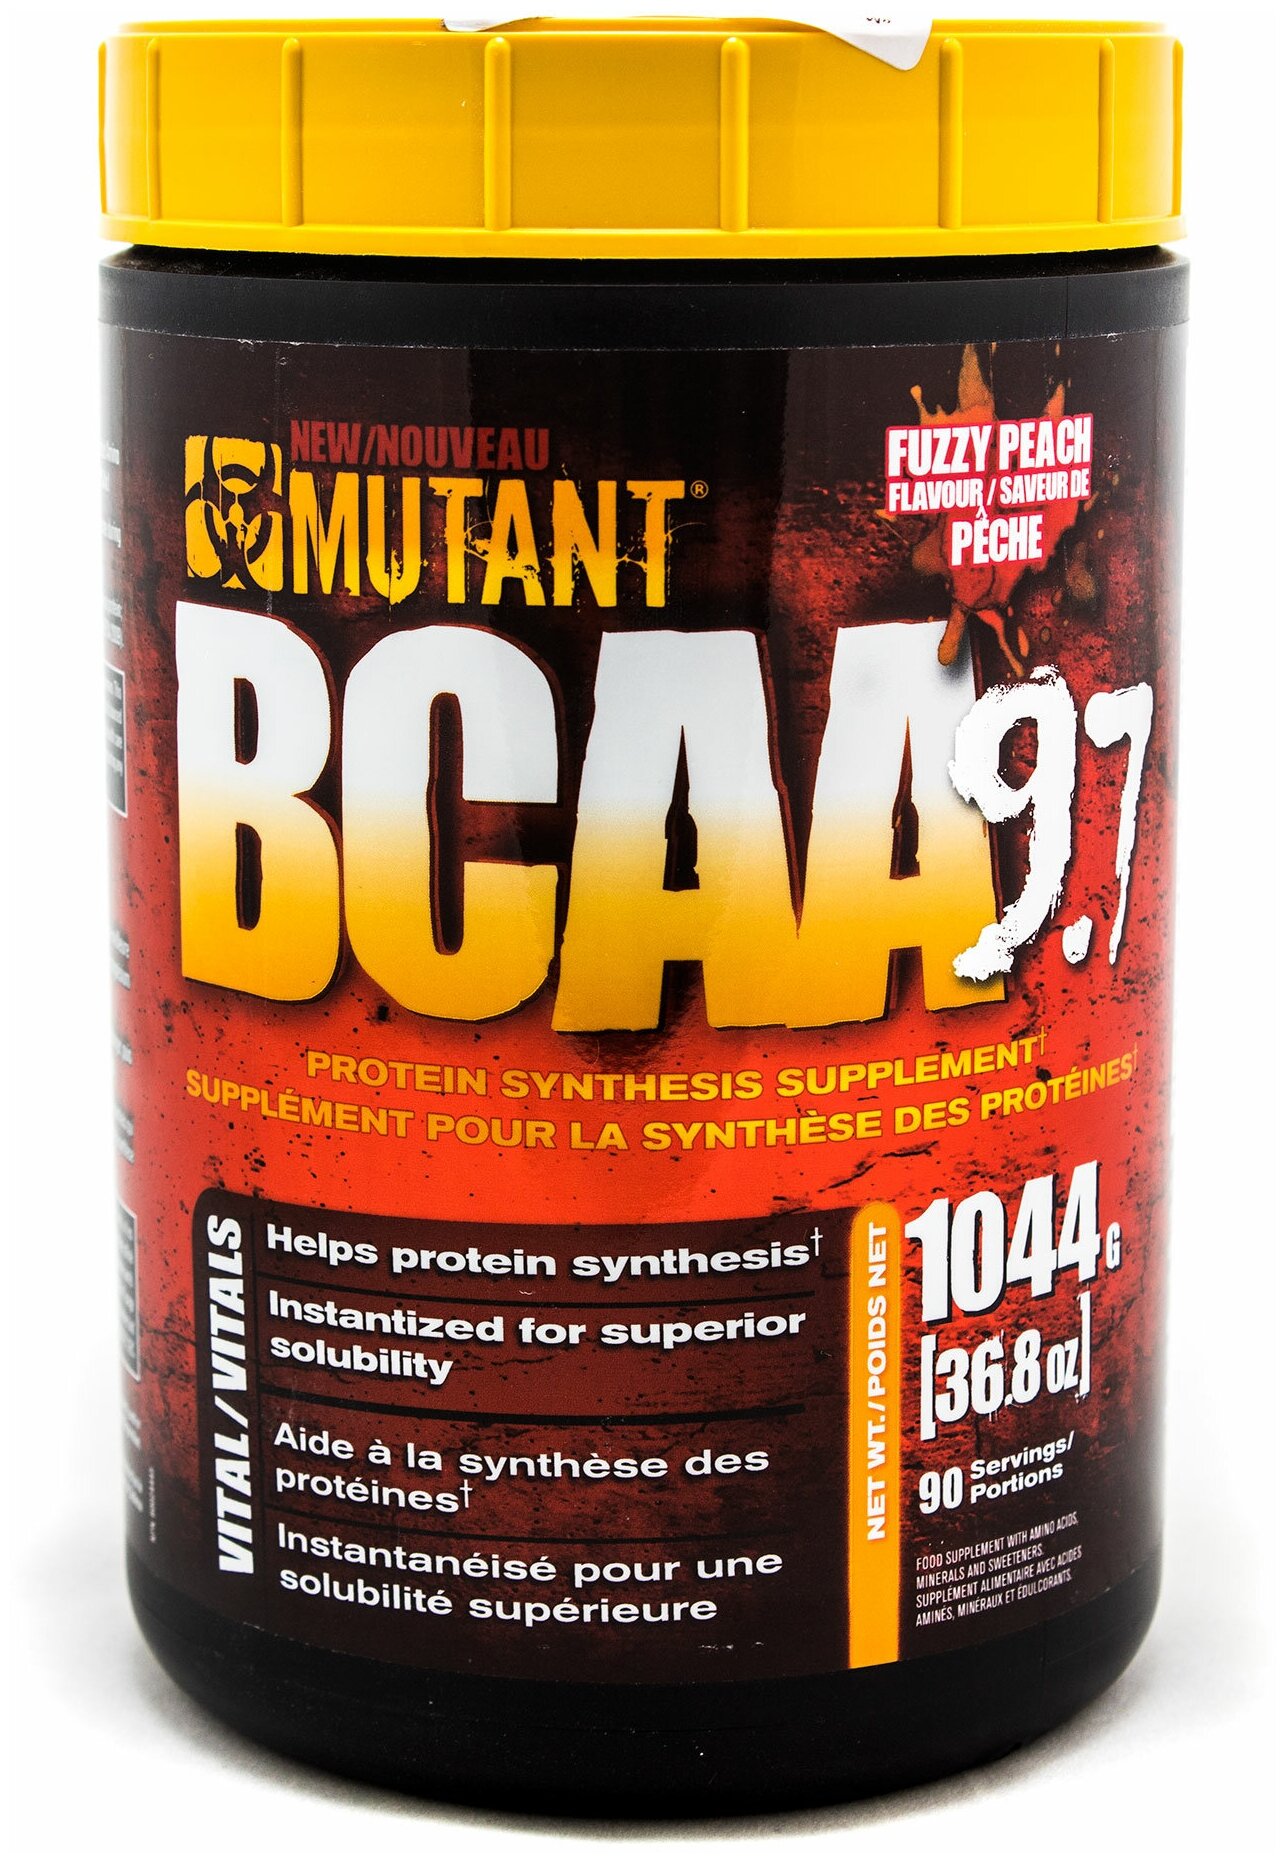   BCAA   Mutant BCAA 9.7 Fuzzy Peach 36,8 oz